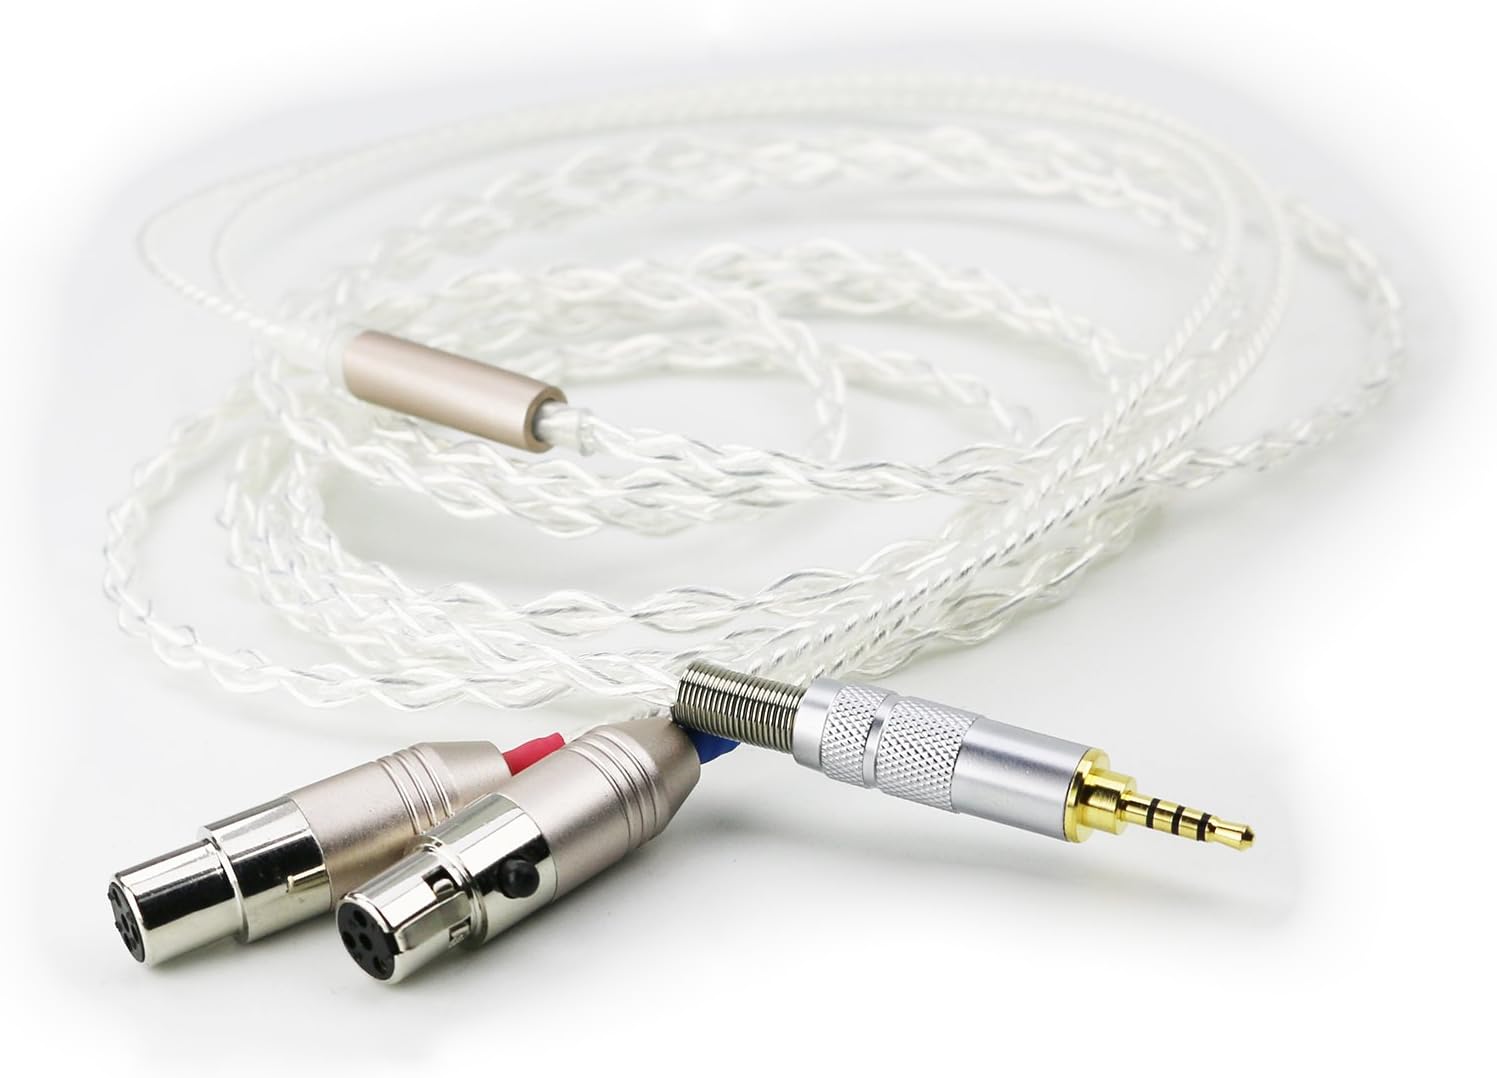 NewFantasia 2.5mm Trrs Male Balanced HiFi Cable [...]